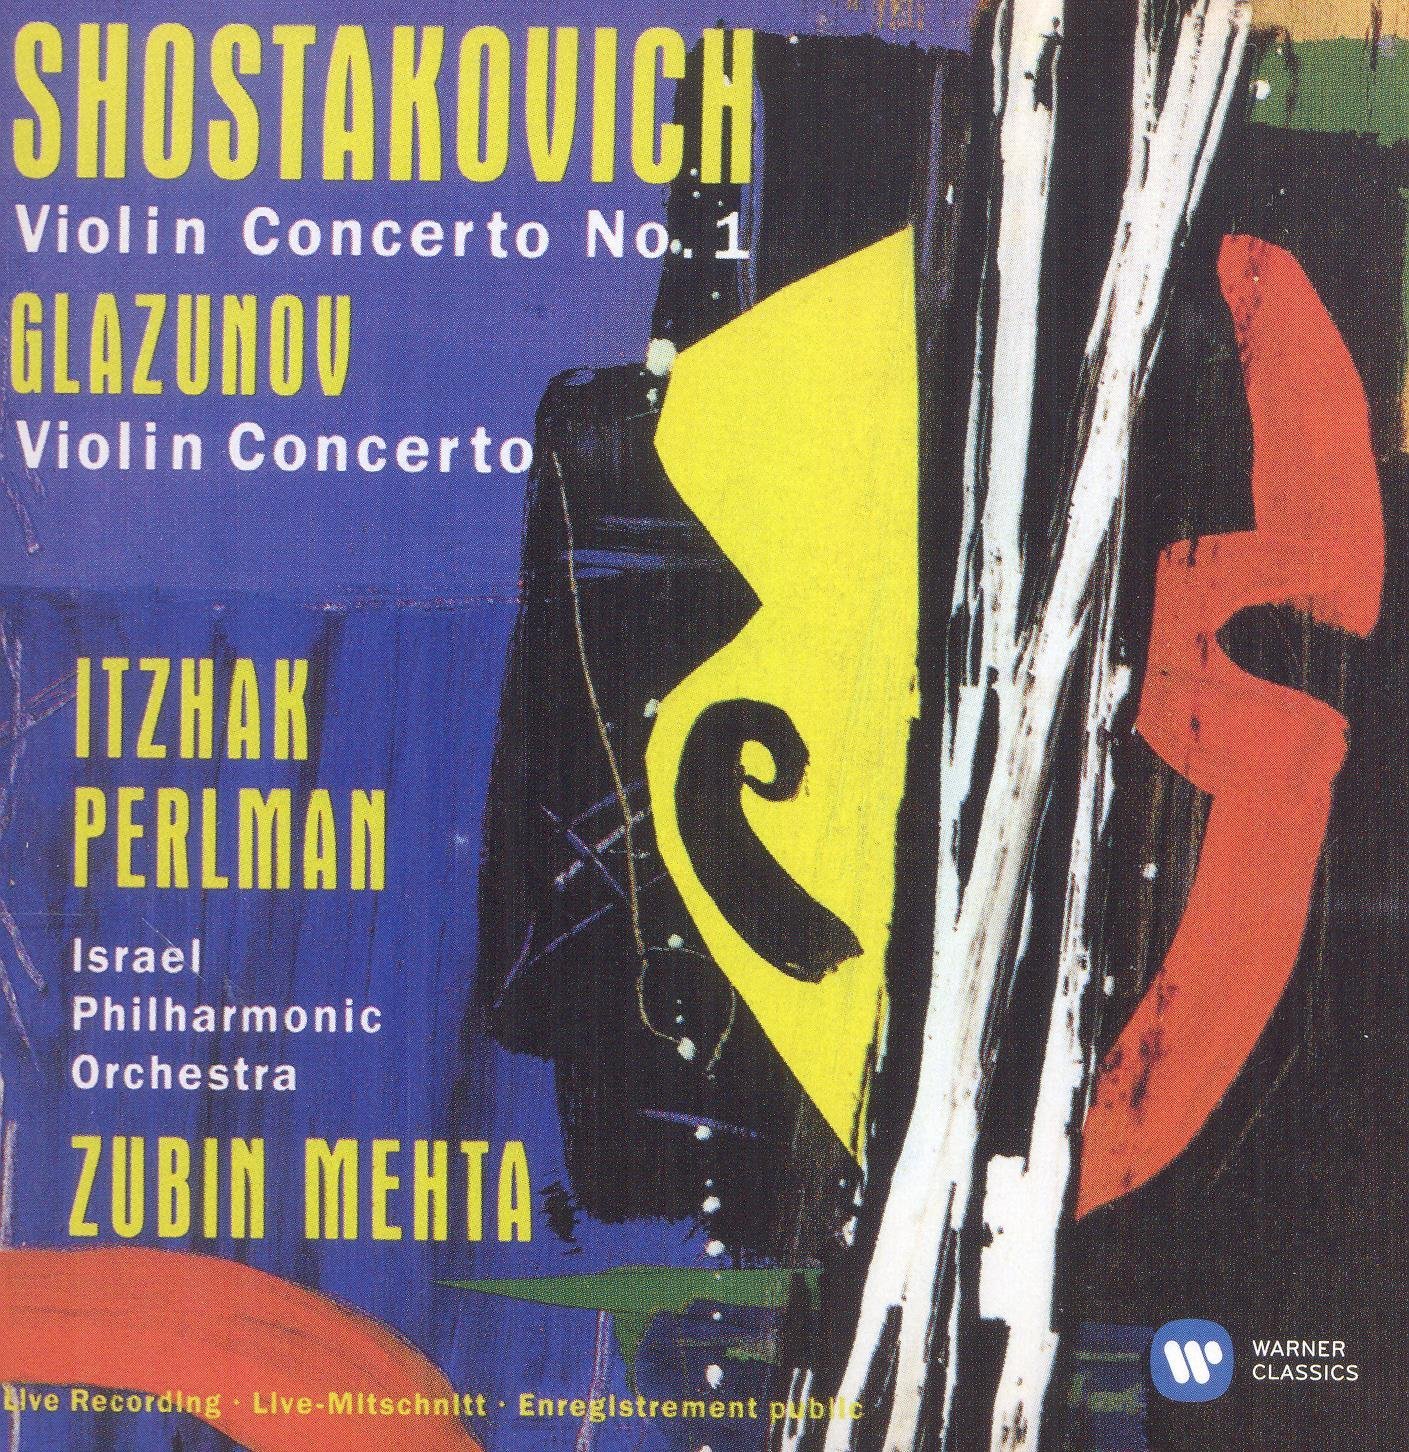 Shostakovich: Violin Concerto No. 1 - Glazunov: Violin Concerto | Itzhak Perlman